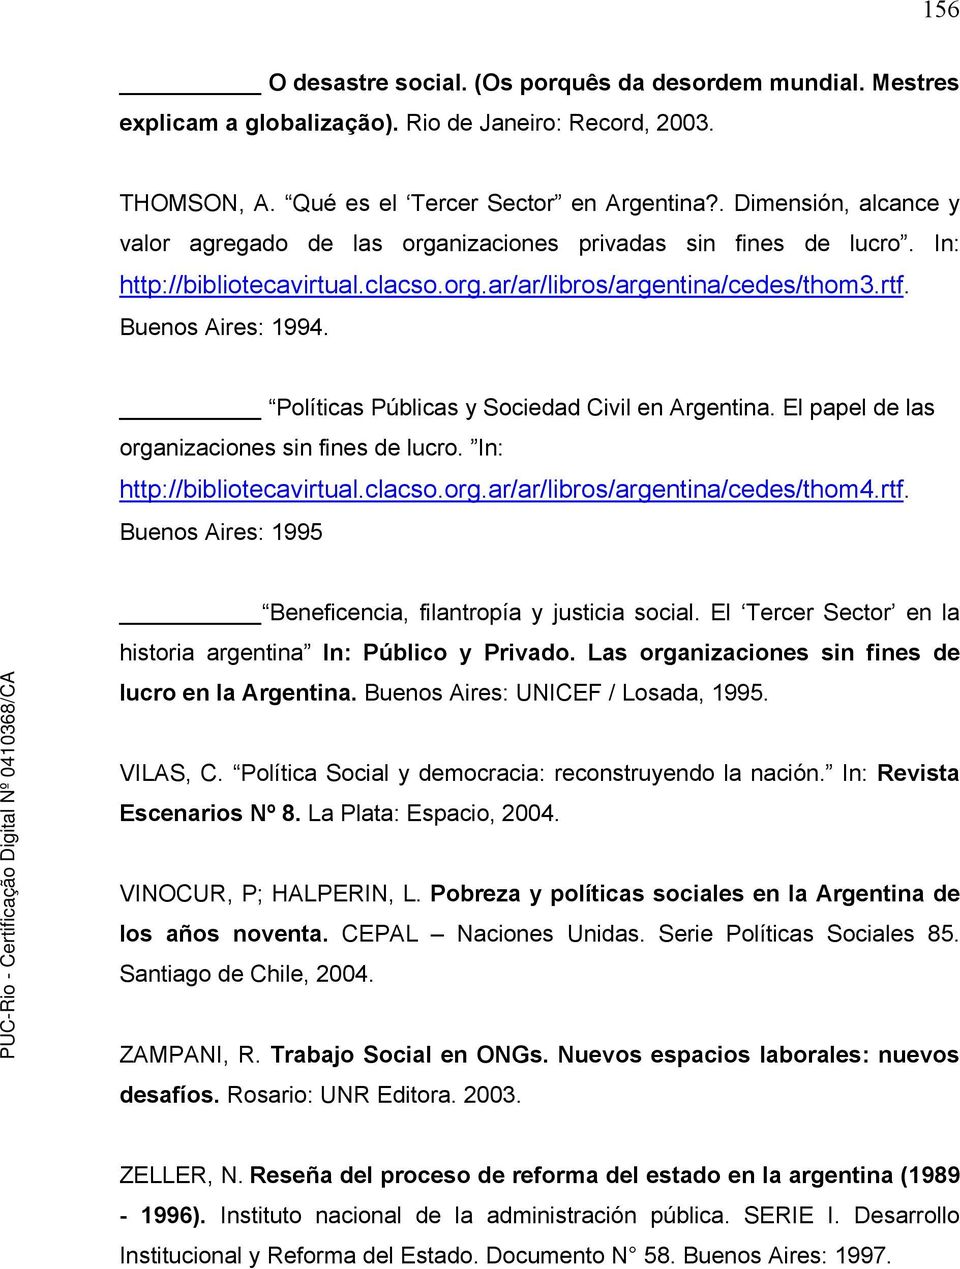 Políticas Públicas y Sociedad Civil en Argentina. El papel de las organizaciones sin fines de lucro. In: http://bibliotecavirtual.clacso.org.ar/ar/libros/argentina/cedes/thom4.rtf.